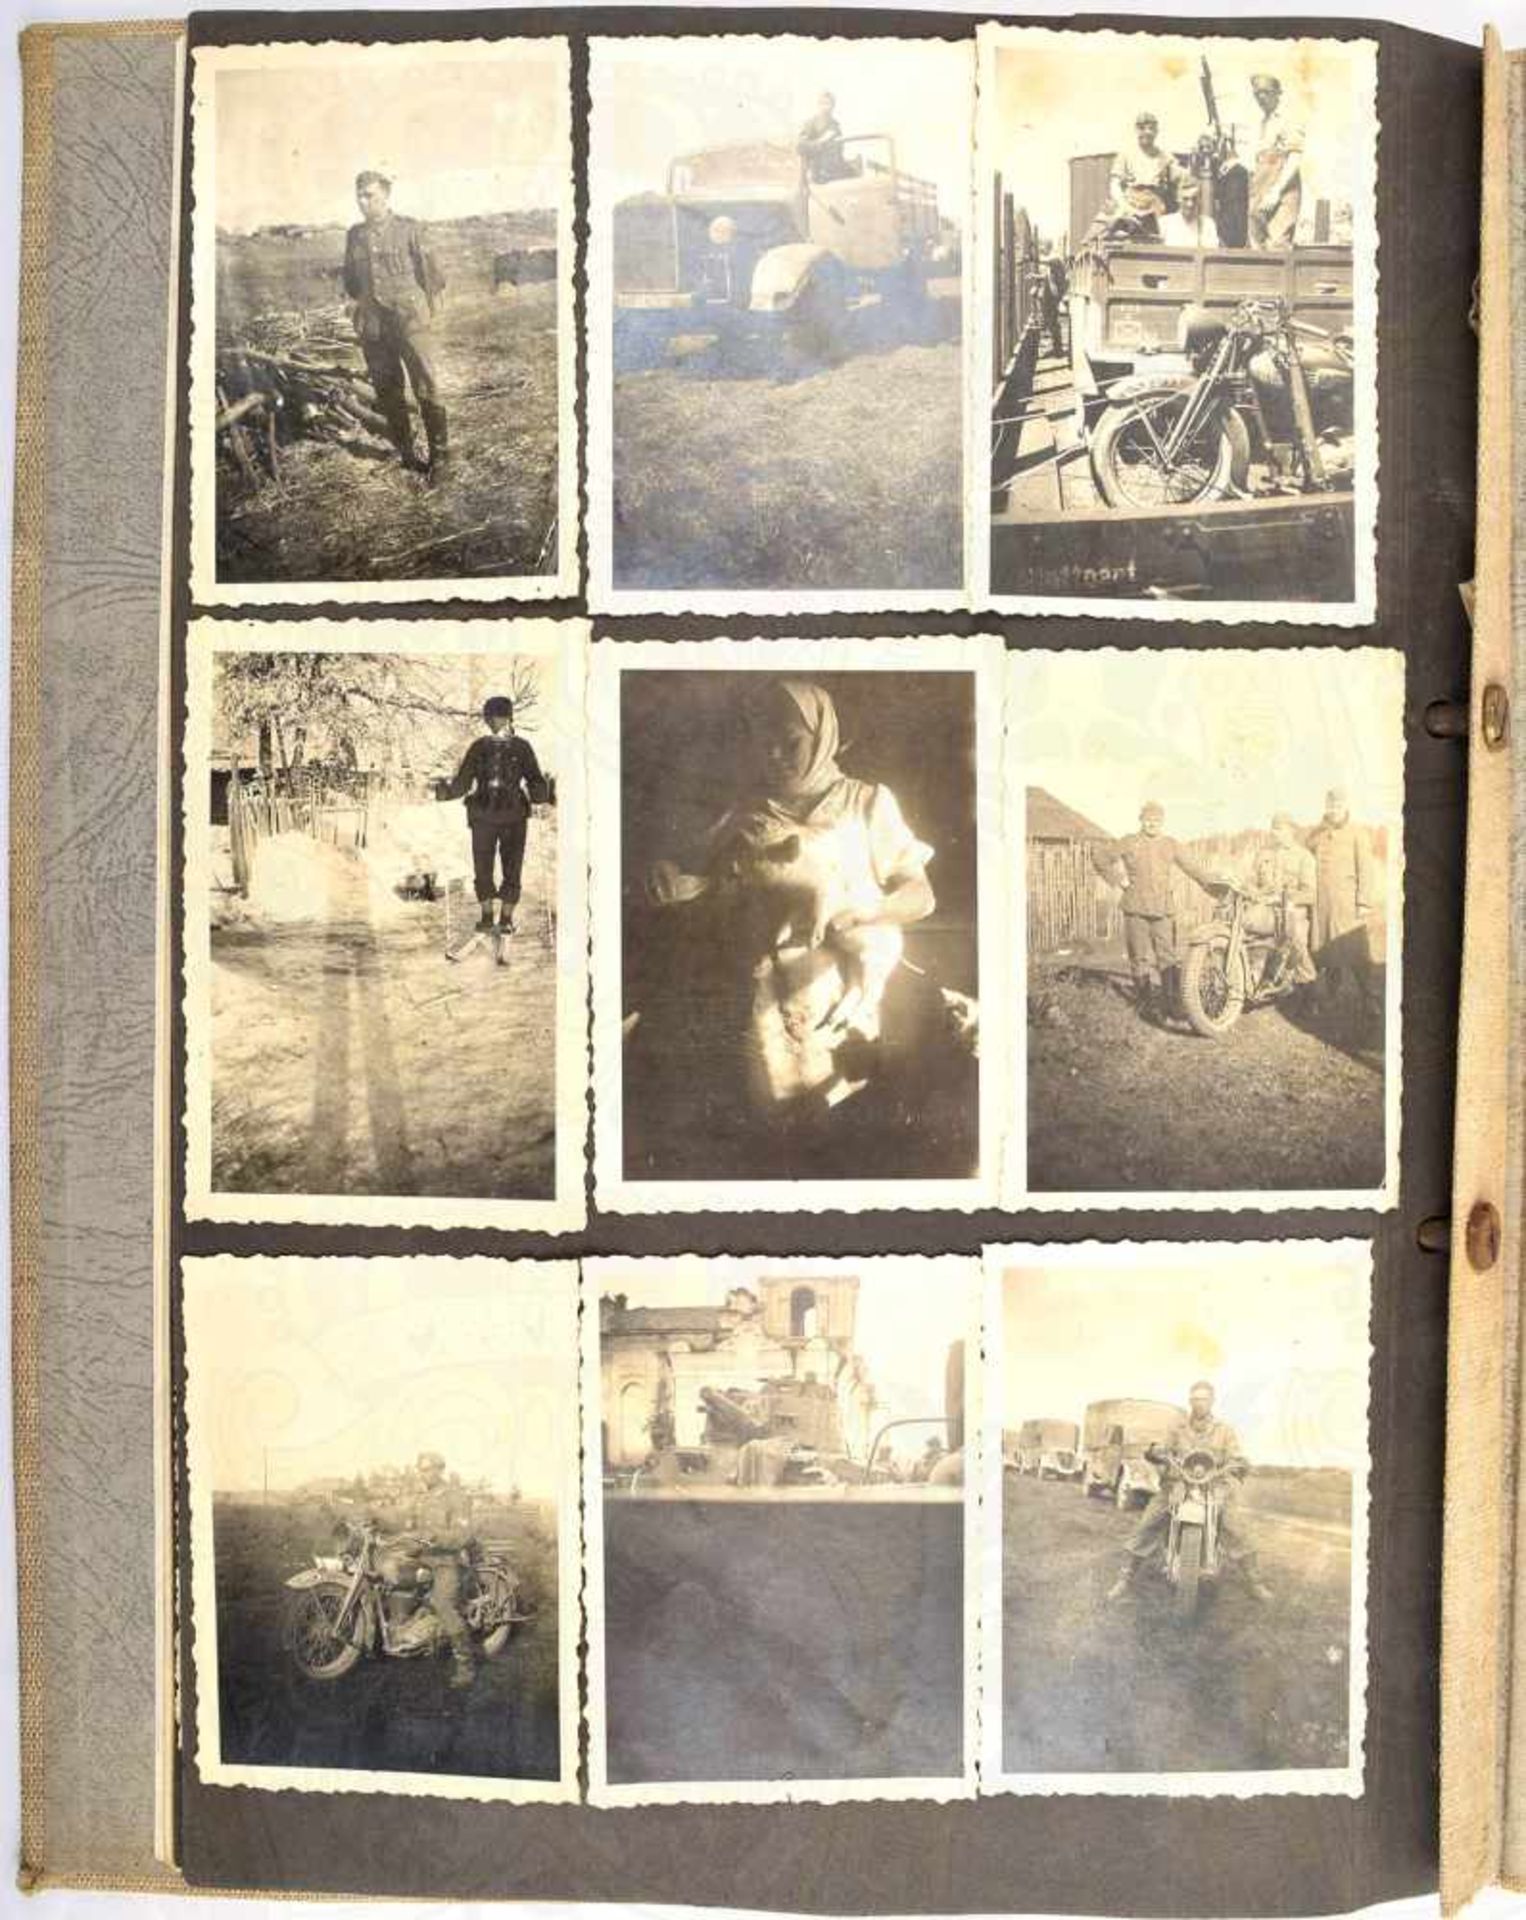 ERINNERUNGSAALBUM EINES GEFREITEN der Panzerabwehr-Abt. 19, mit 72 Fotos, Rußland-Feldzug 1942, - Bild 3 aus 3